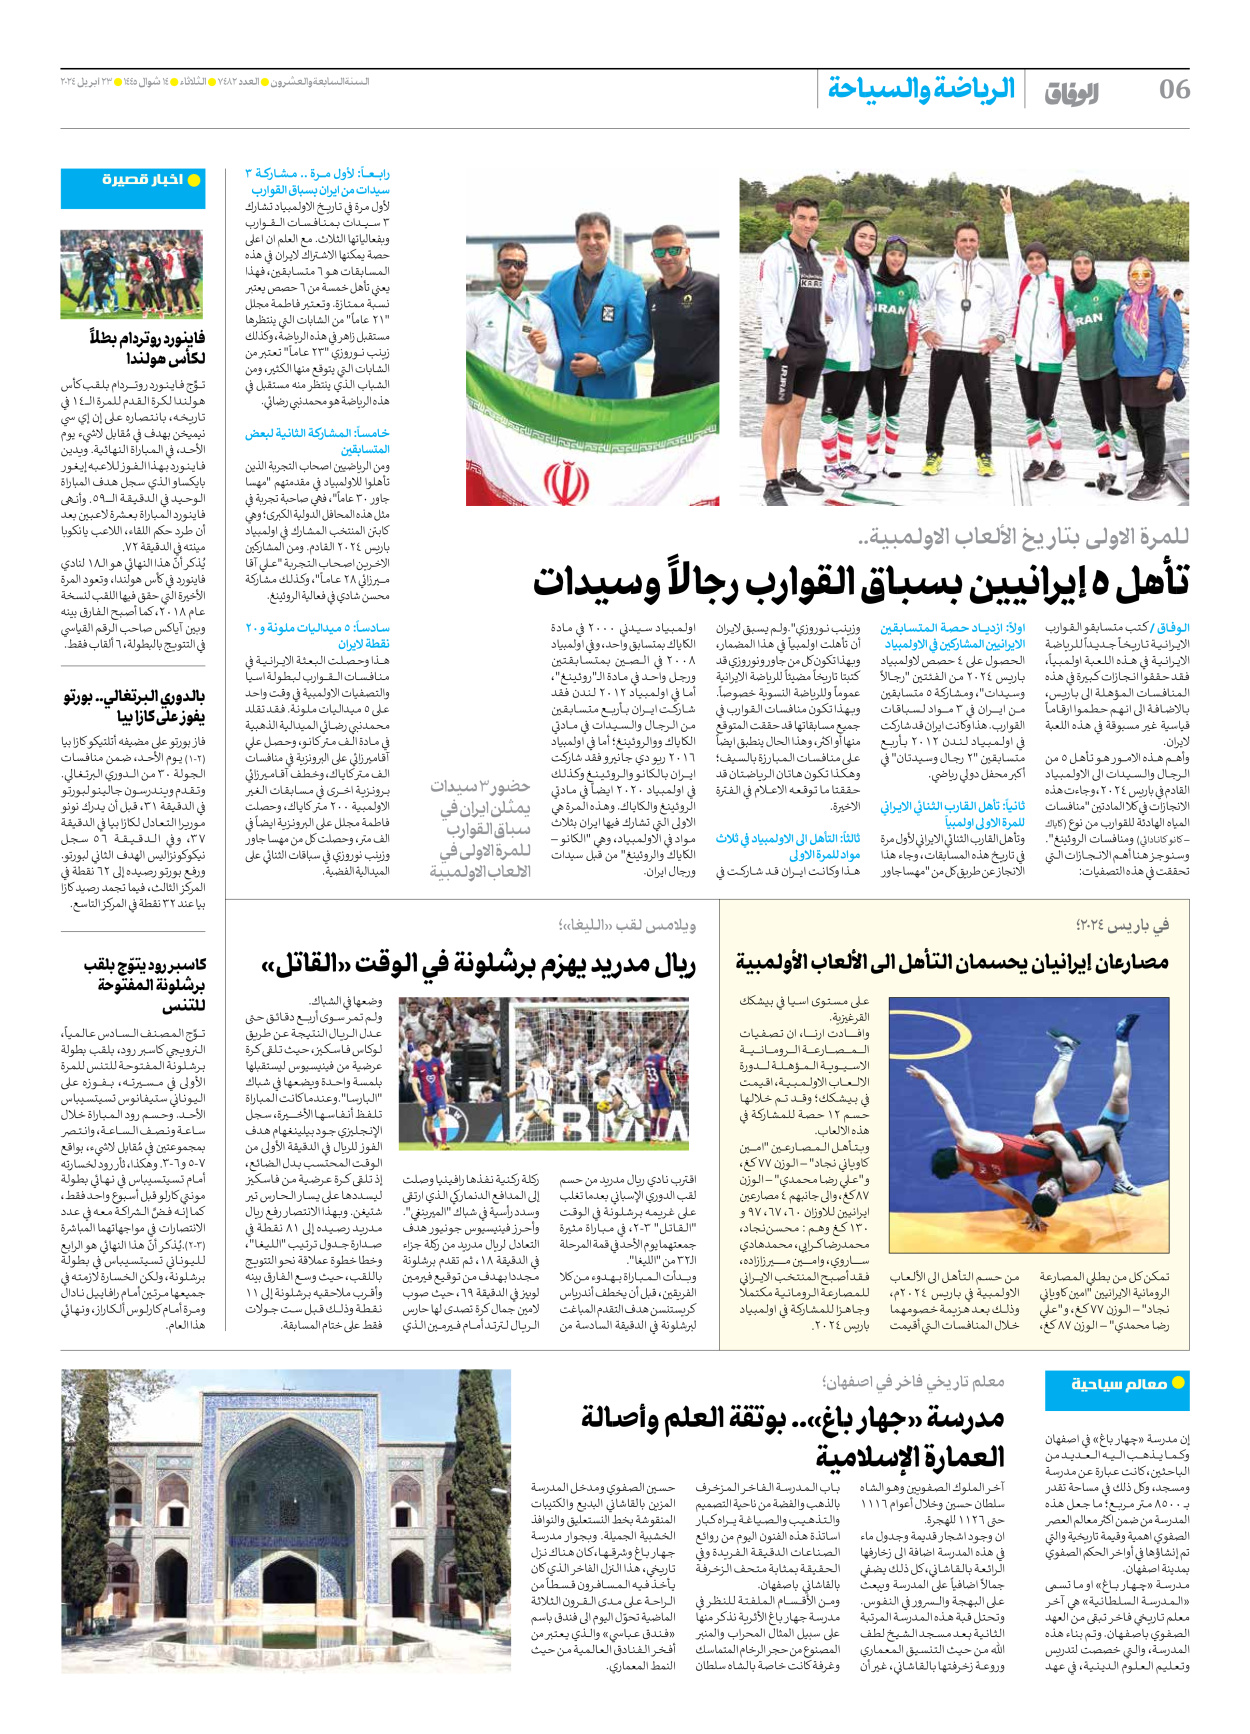 صحیفة ایران الدولیة الوفاق - العدد سبعة آلاف وأربعمائة واثنان وثمانون - ٢٣ أبريل ٢٠٢٤ - الصفحة ٦